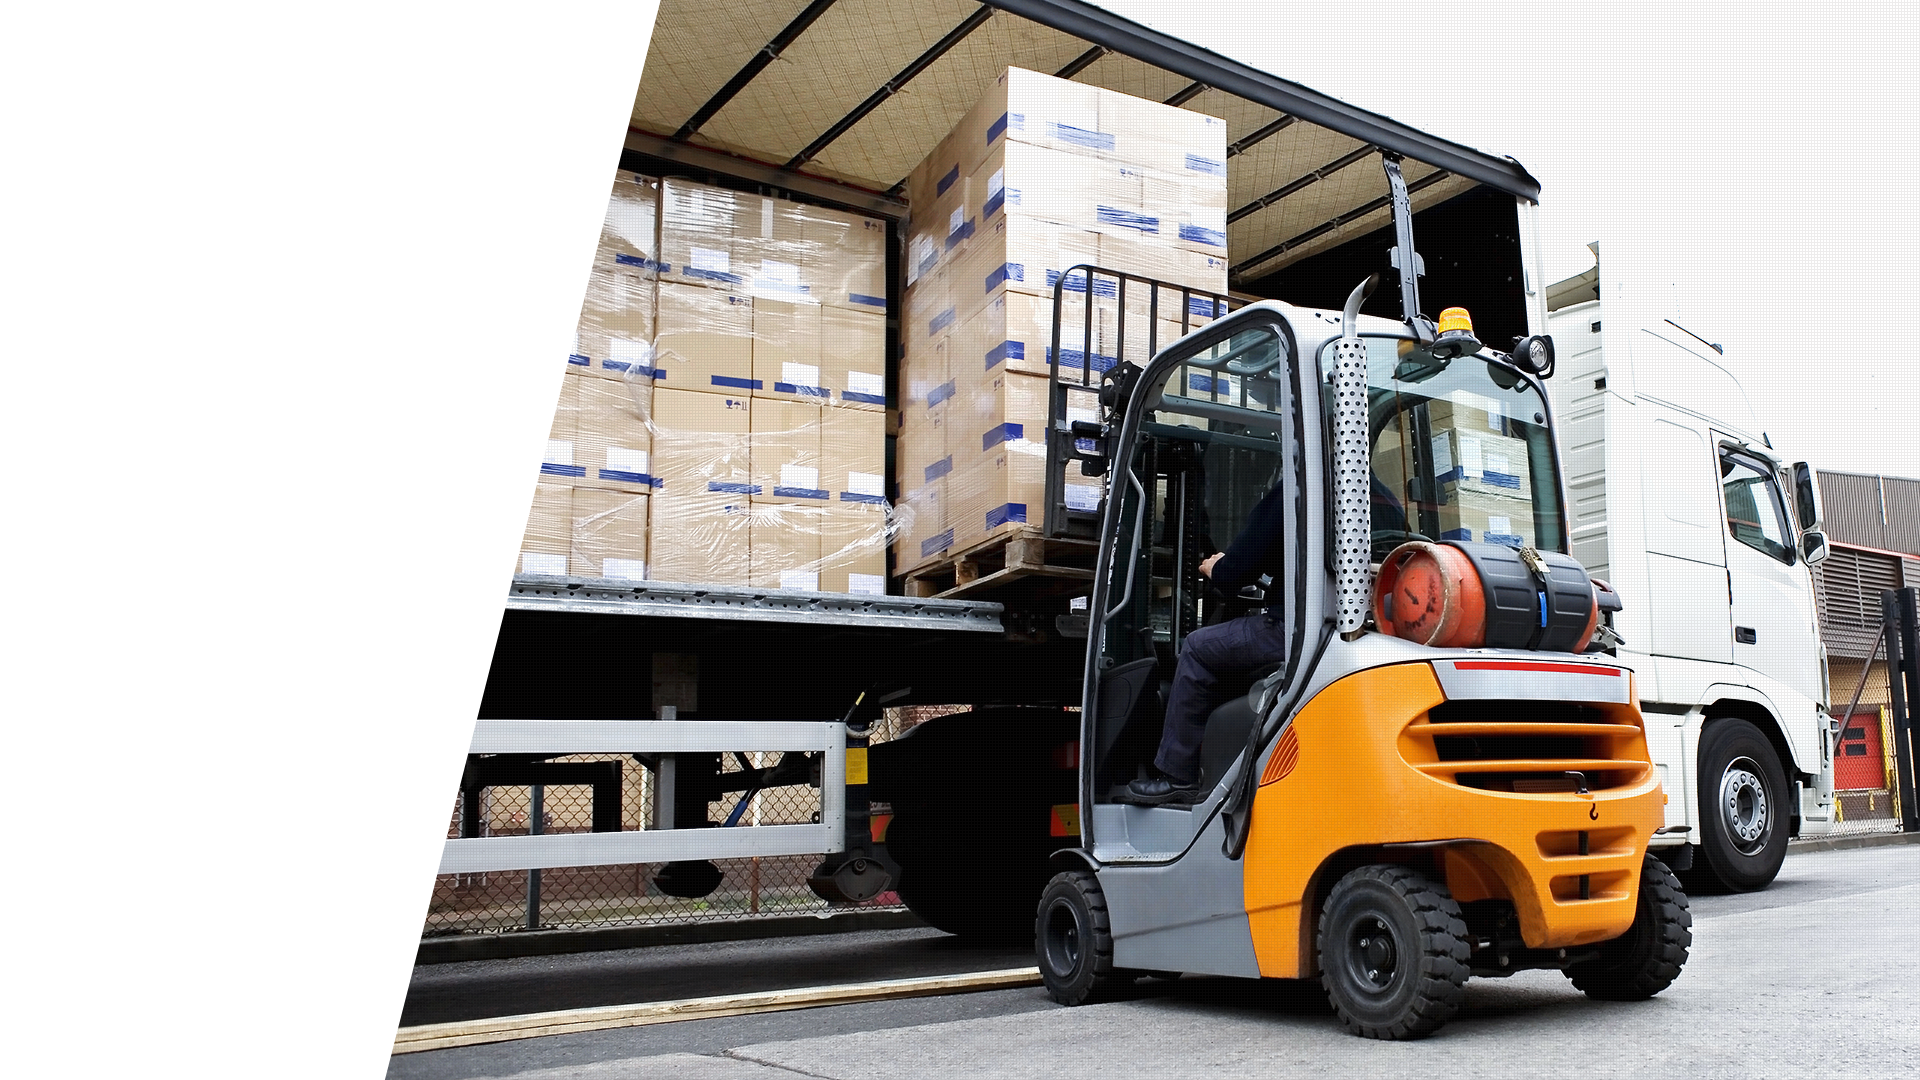 一般貨物運搬・食品輸送・倉庫管理の一般貨物運搬など物流サービスを提供する株式会社Trans Value